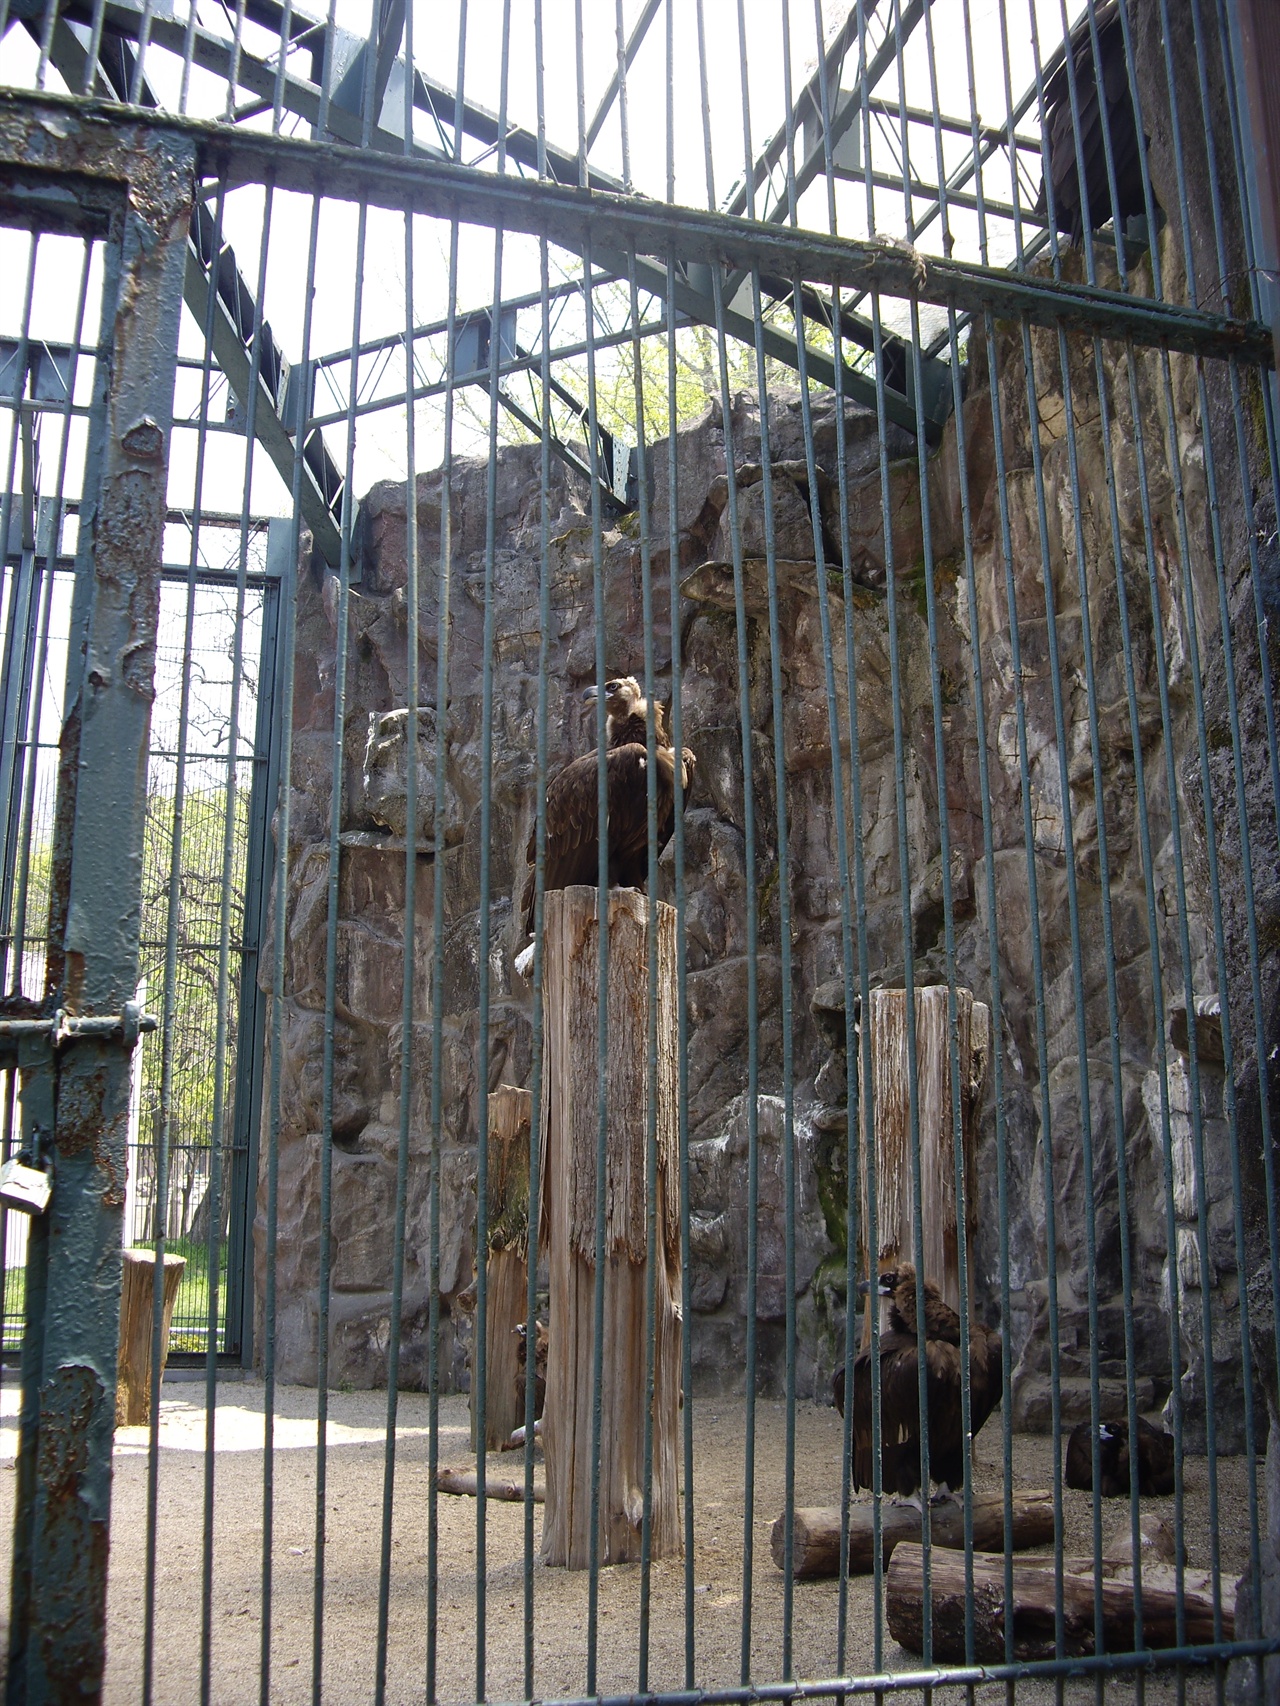 서울동물원은 여러 규제에 묶여 제대로 된 리뉴얼조차 못 하고 있다. 전시관이 좁아 날지 못하는 독수리들. 